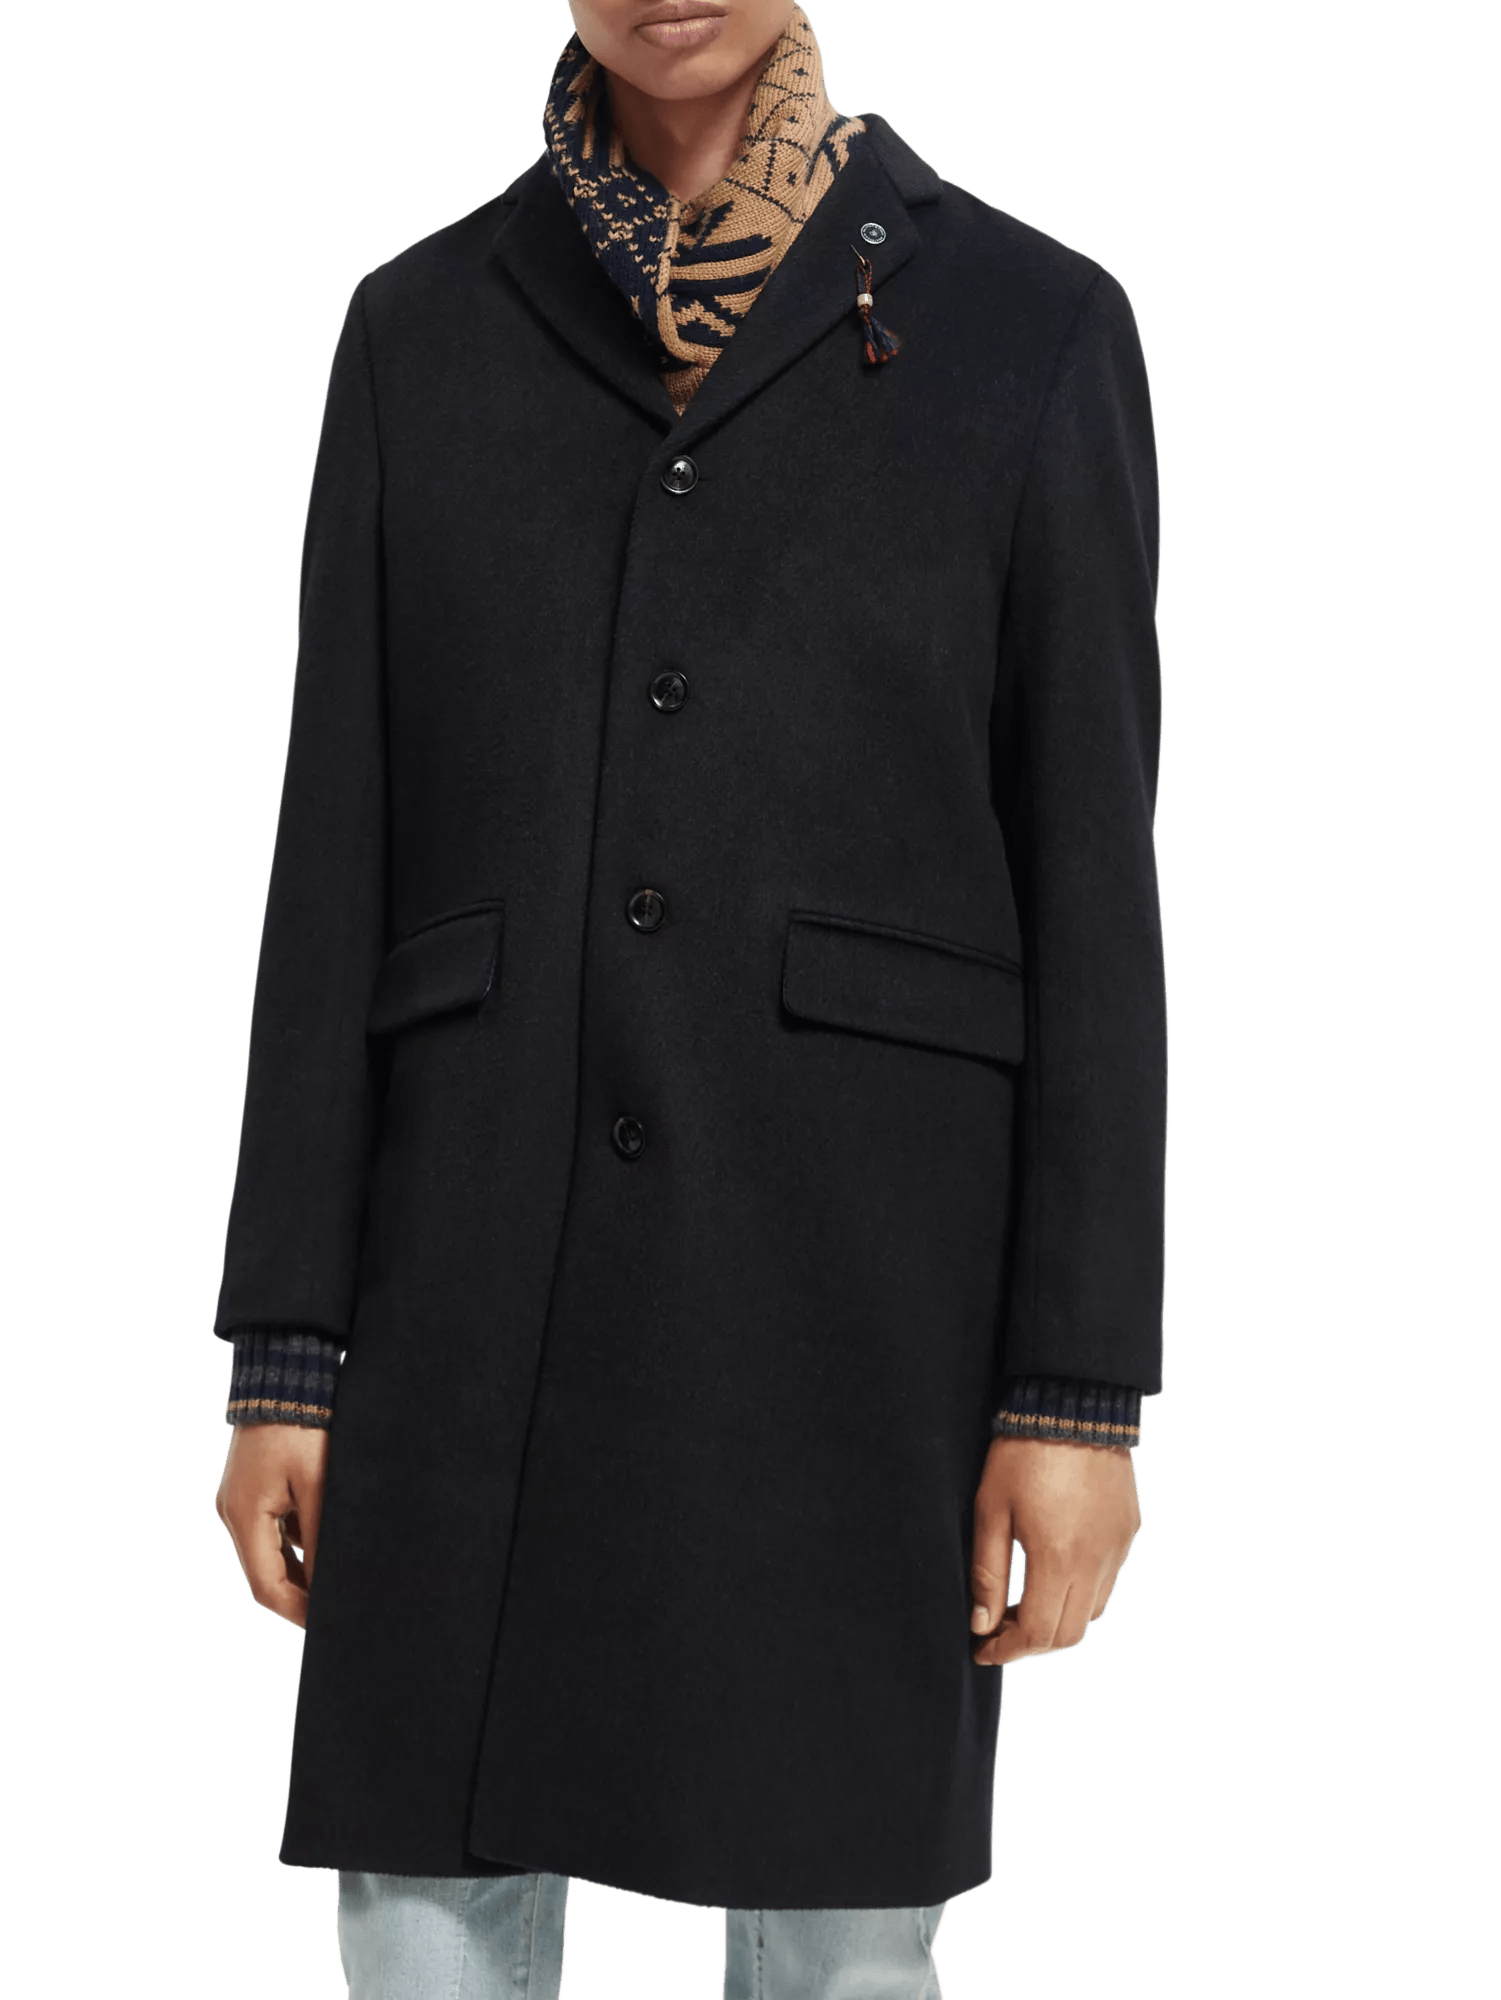 Classic wool-blend overcoat